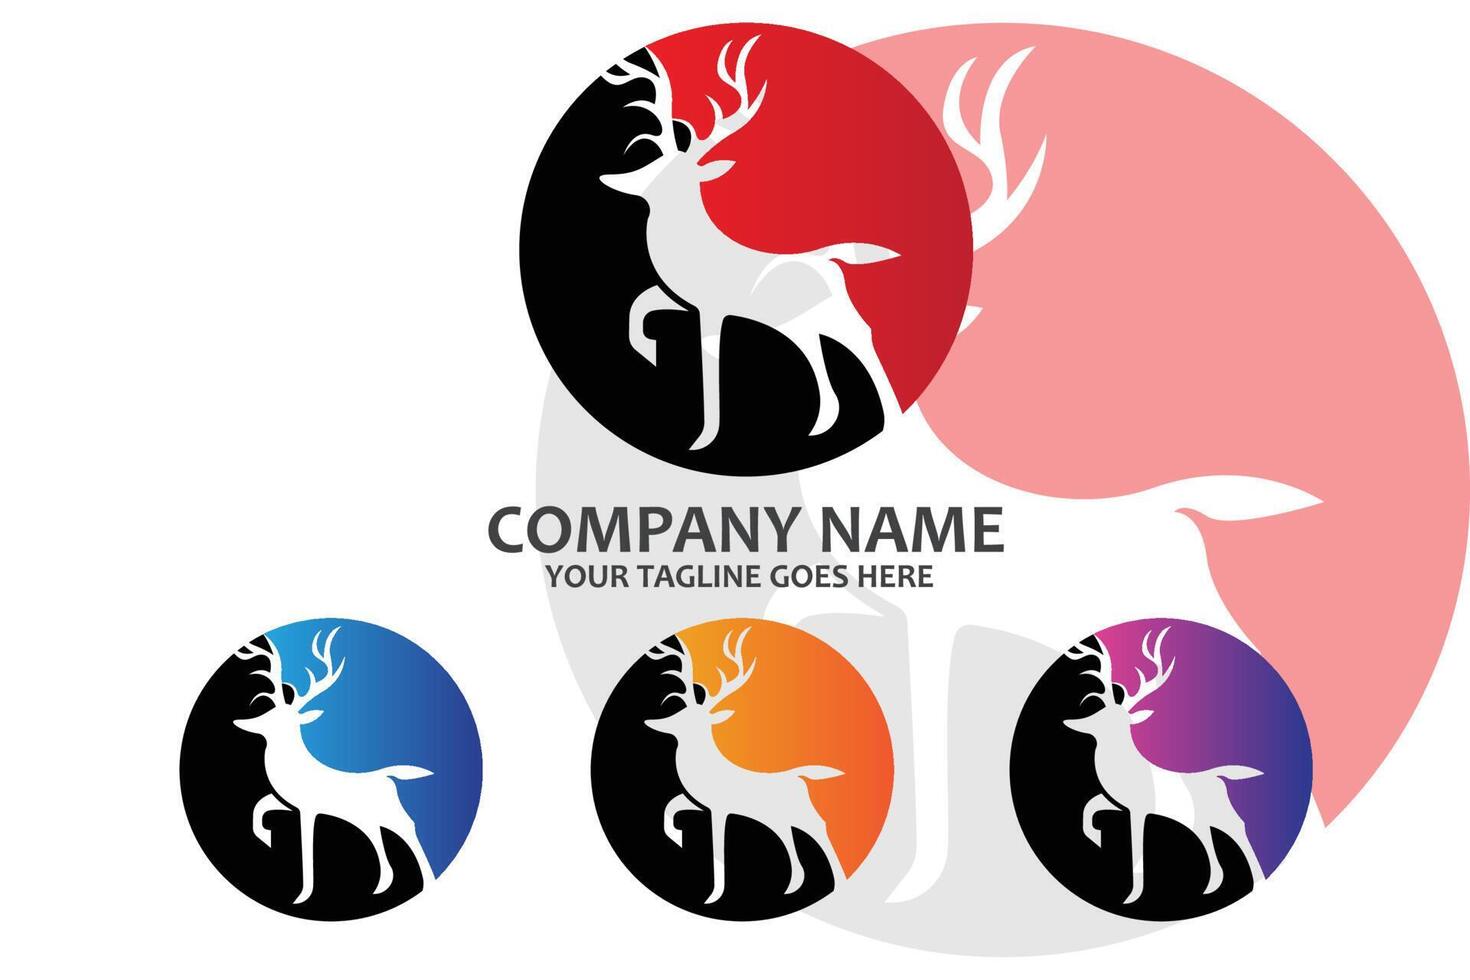 mamífero animal ciervo logo vector icono, viviendo en el bosque, ilustración de diseño